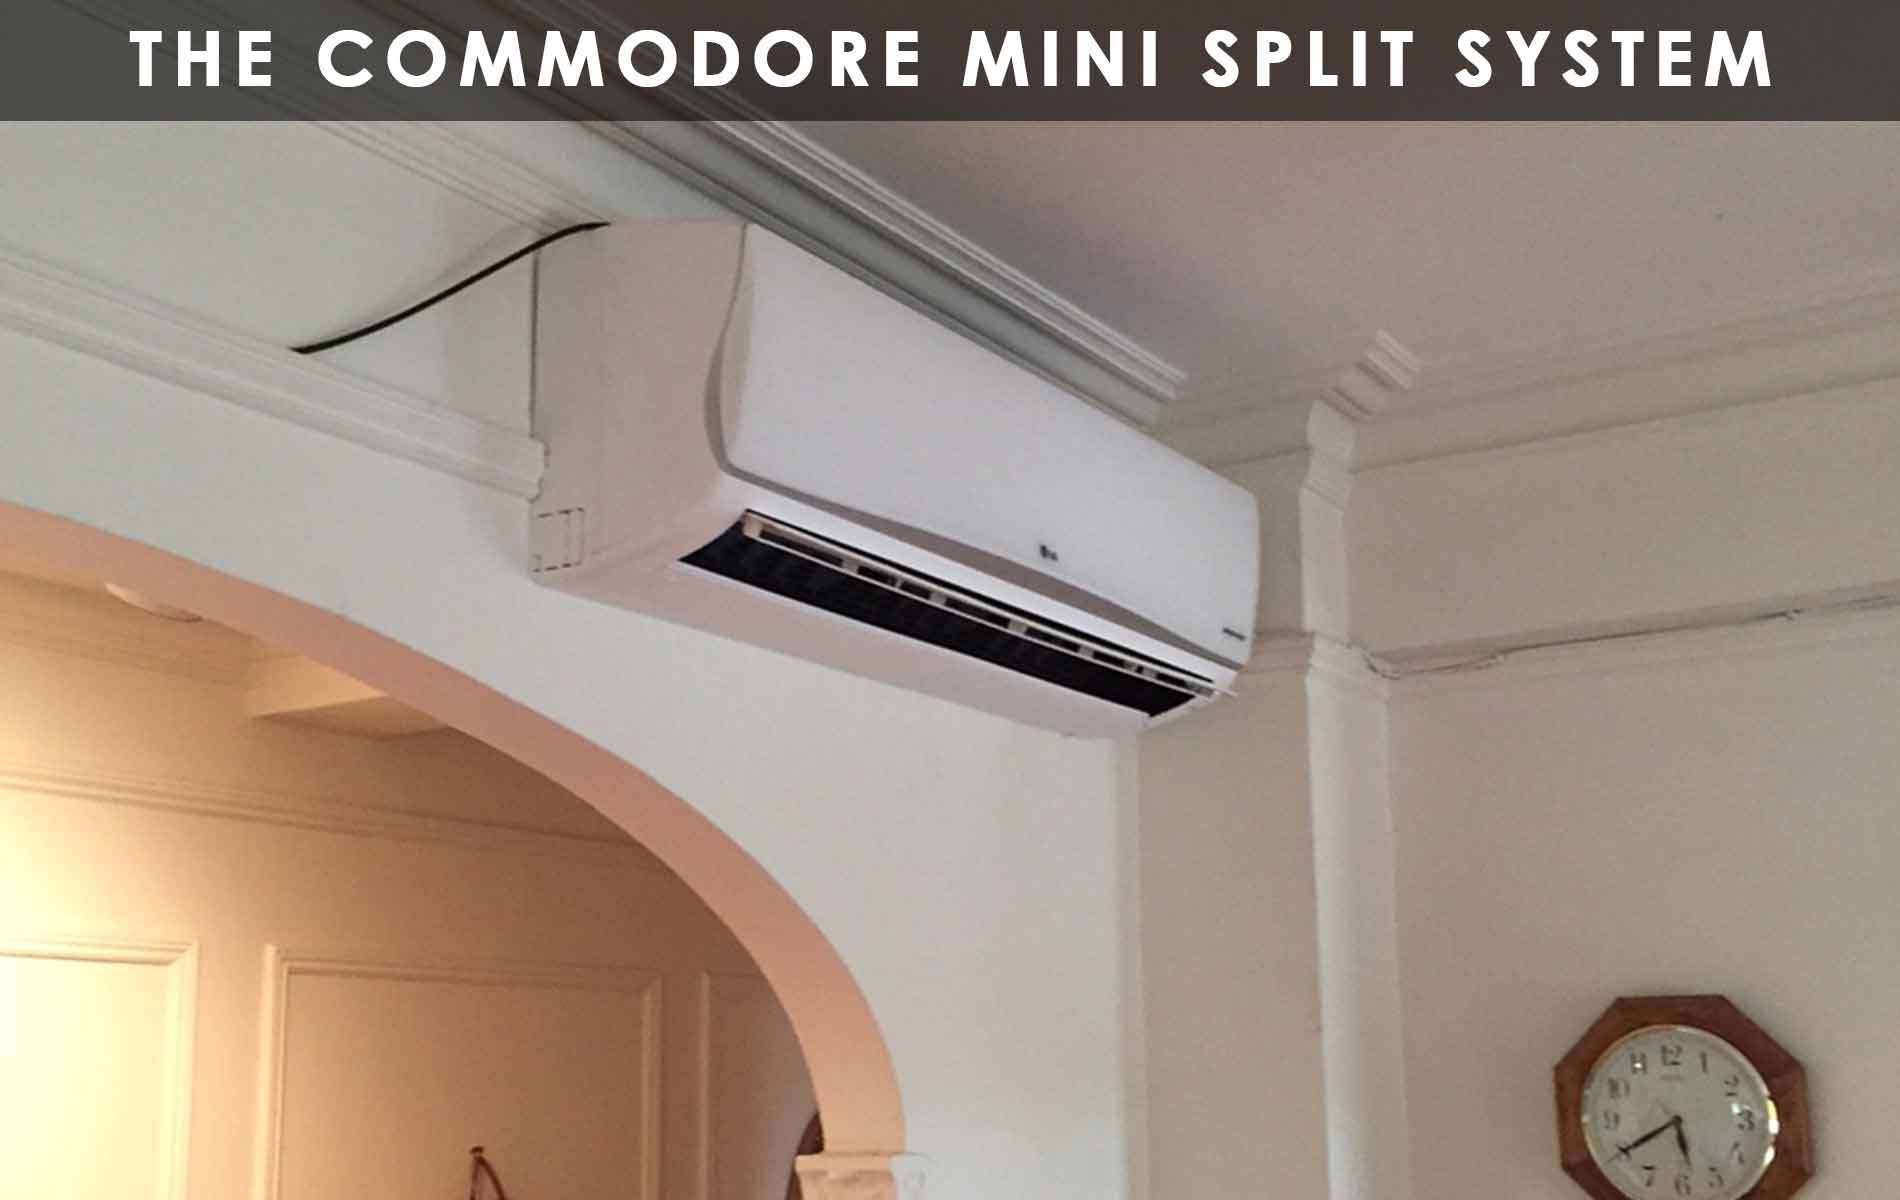 The Commodore Mini Split System